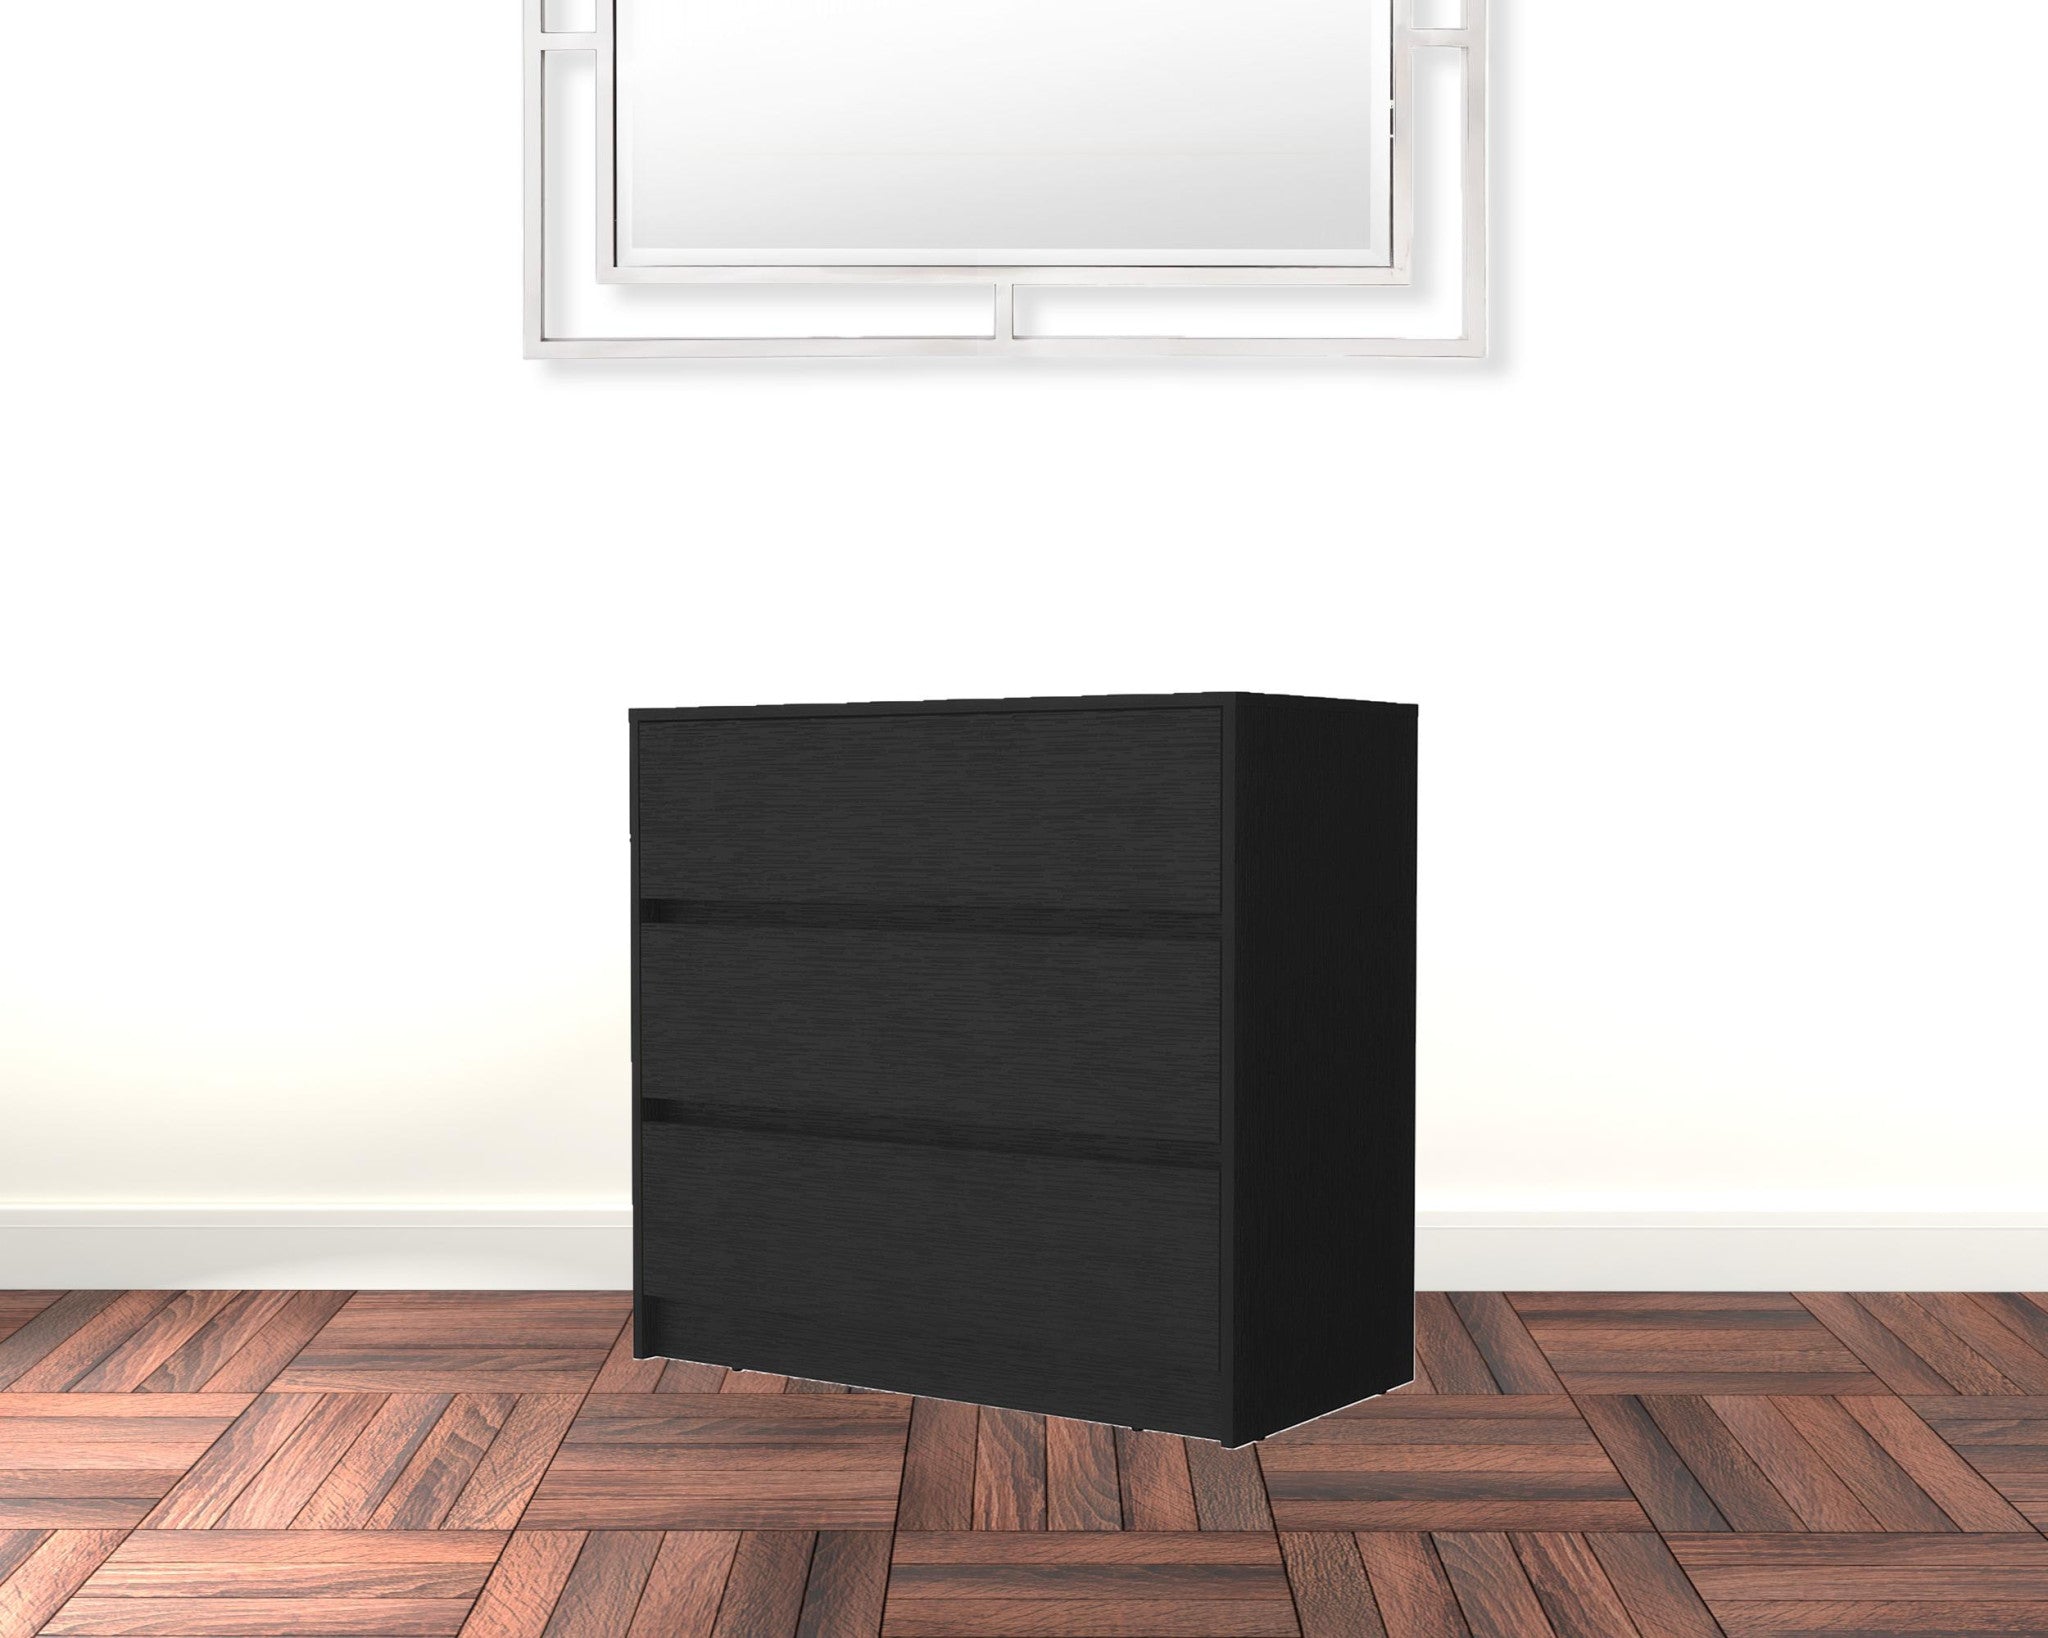 33" Black Manufactured Wood Three Drawer No Handles Dresser